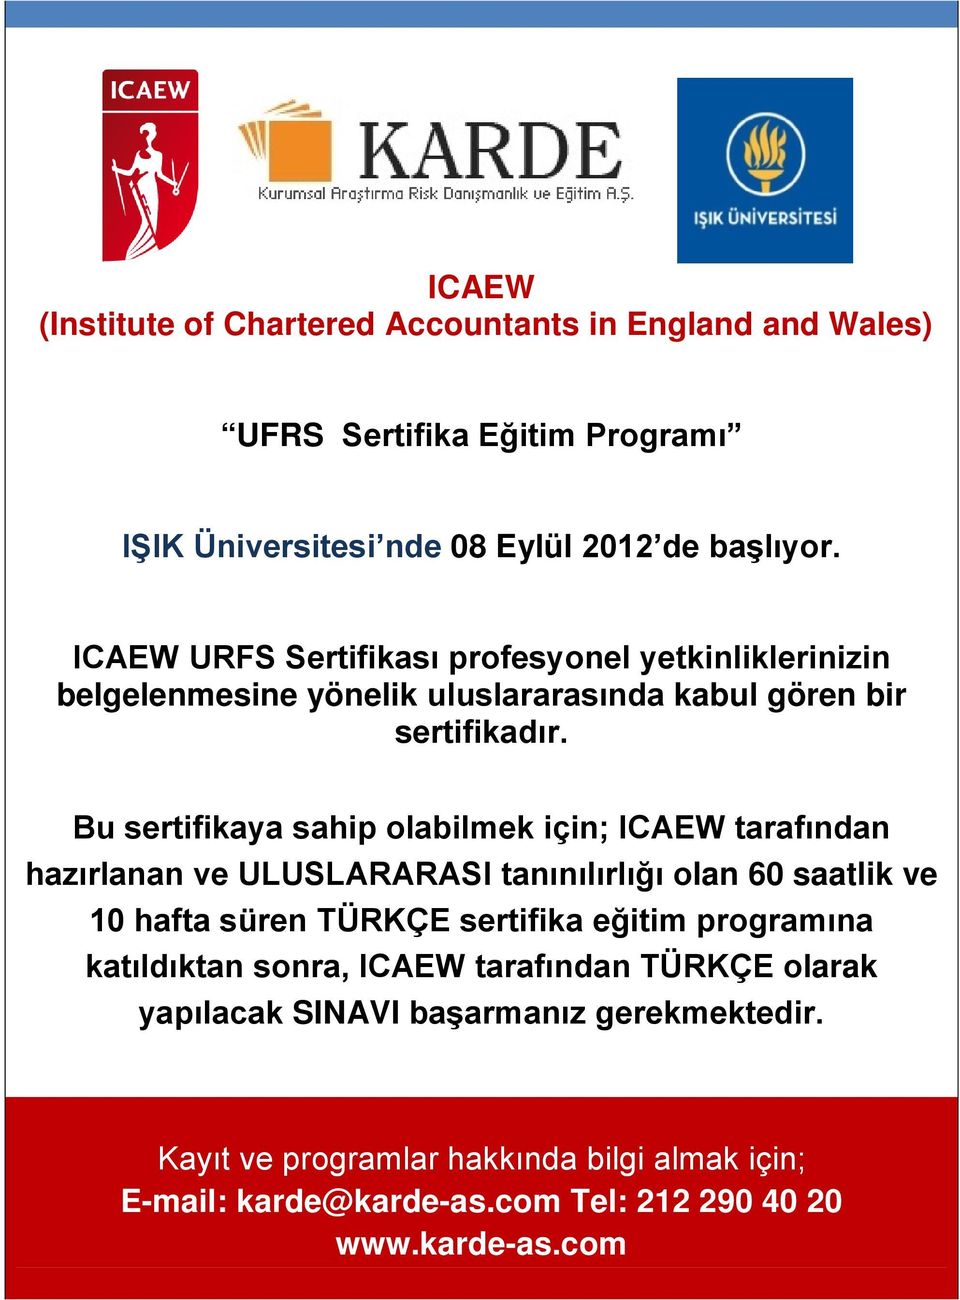 Bu sertifikaya sahip olabilmek için; ICAEW tarafından hazırlanan ve ULUSLARARASI tanınılırlığı olan 60 saatlik ve 10 hafta süren TÜRKÇE sertifika eğitim